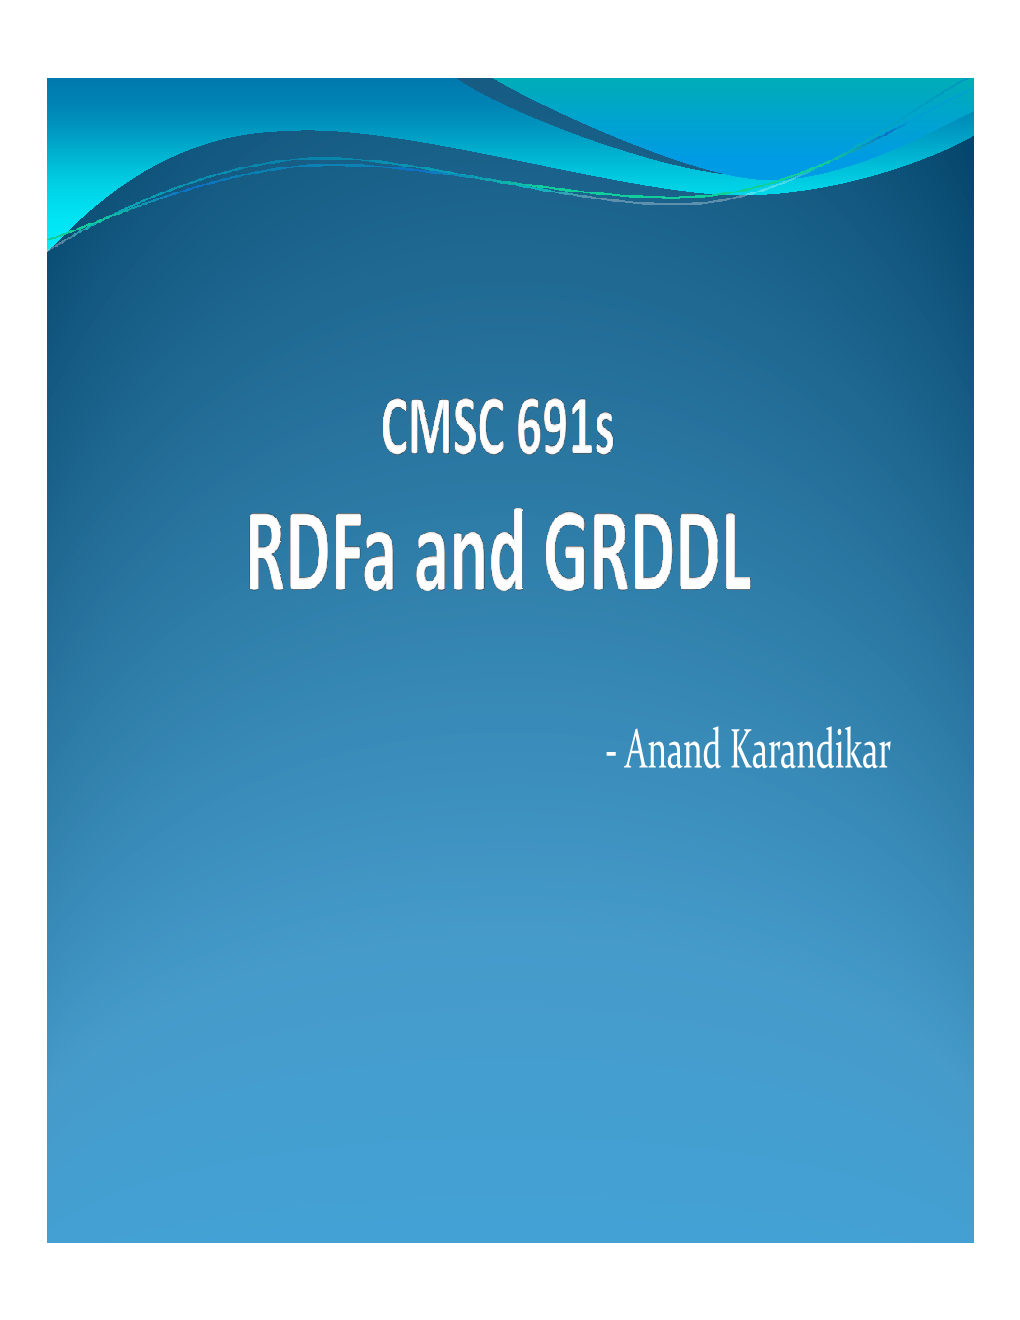 Anand Karandikar Overview  What Is Rdfa?